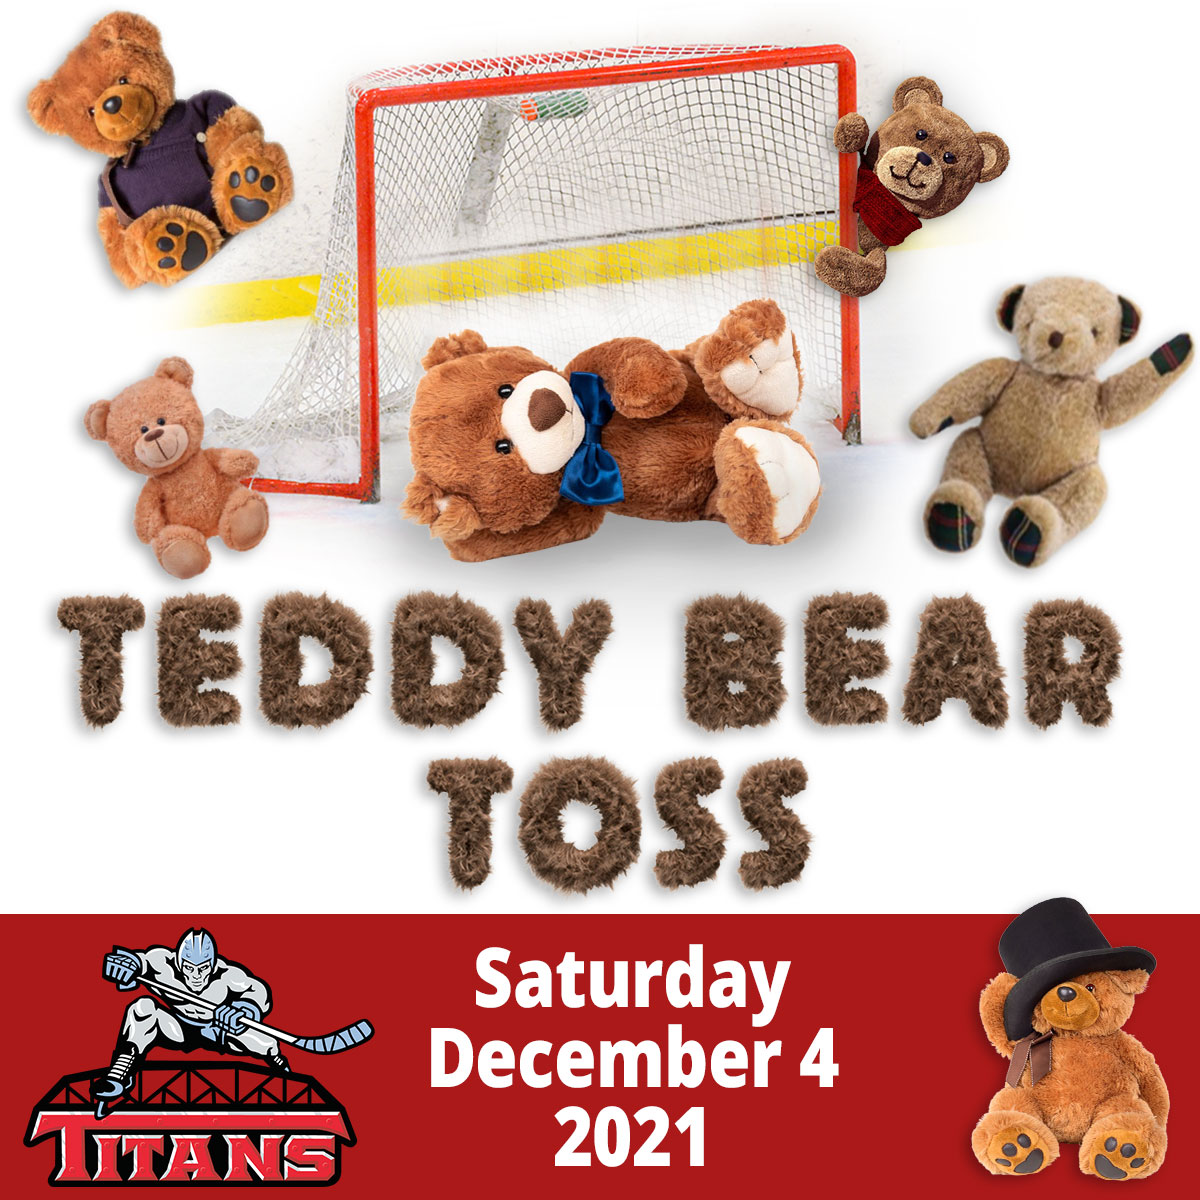 Titans announce Teddy Bear Toss